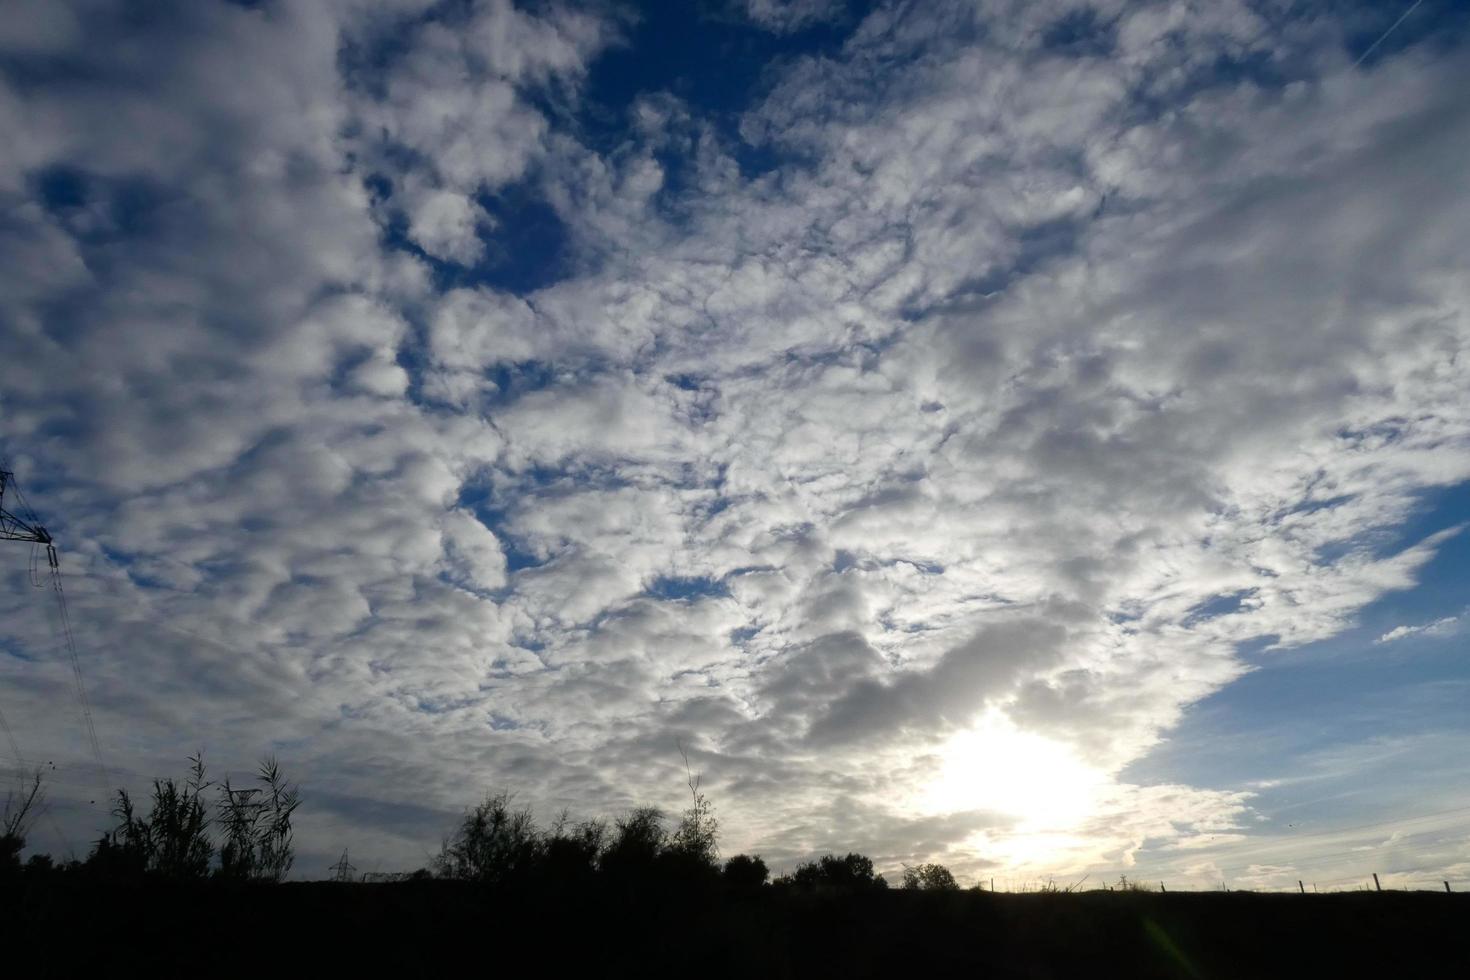 nubes dispersas en el cielo que indican un cambio en el clima. foto